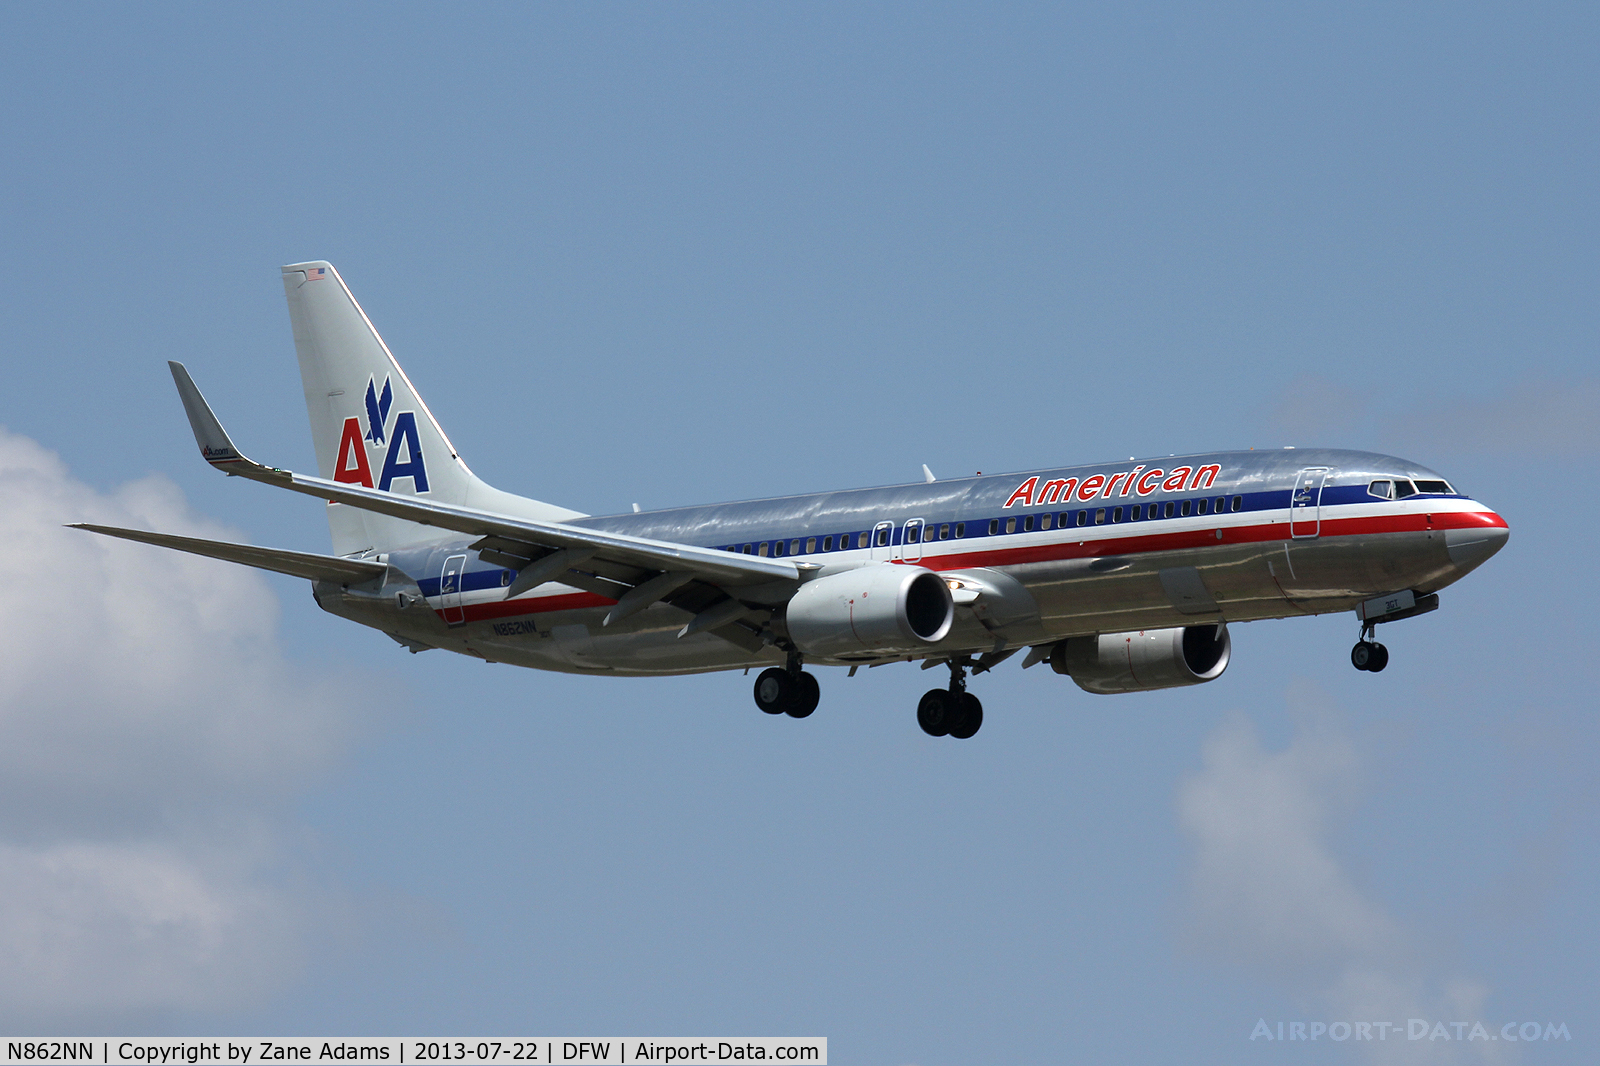 N862NN, 2010 Boeing 737-823 C/N 30905, Landing at DFW Airport